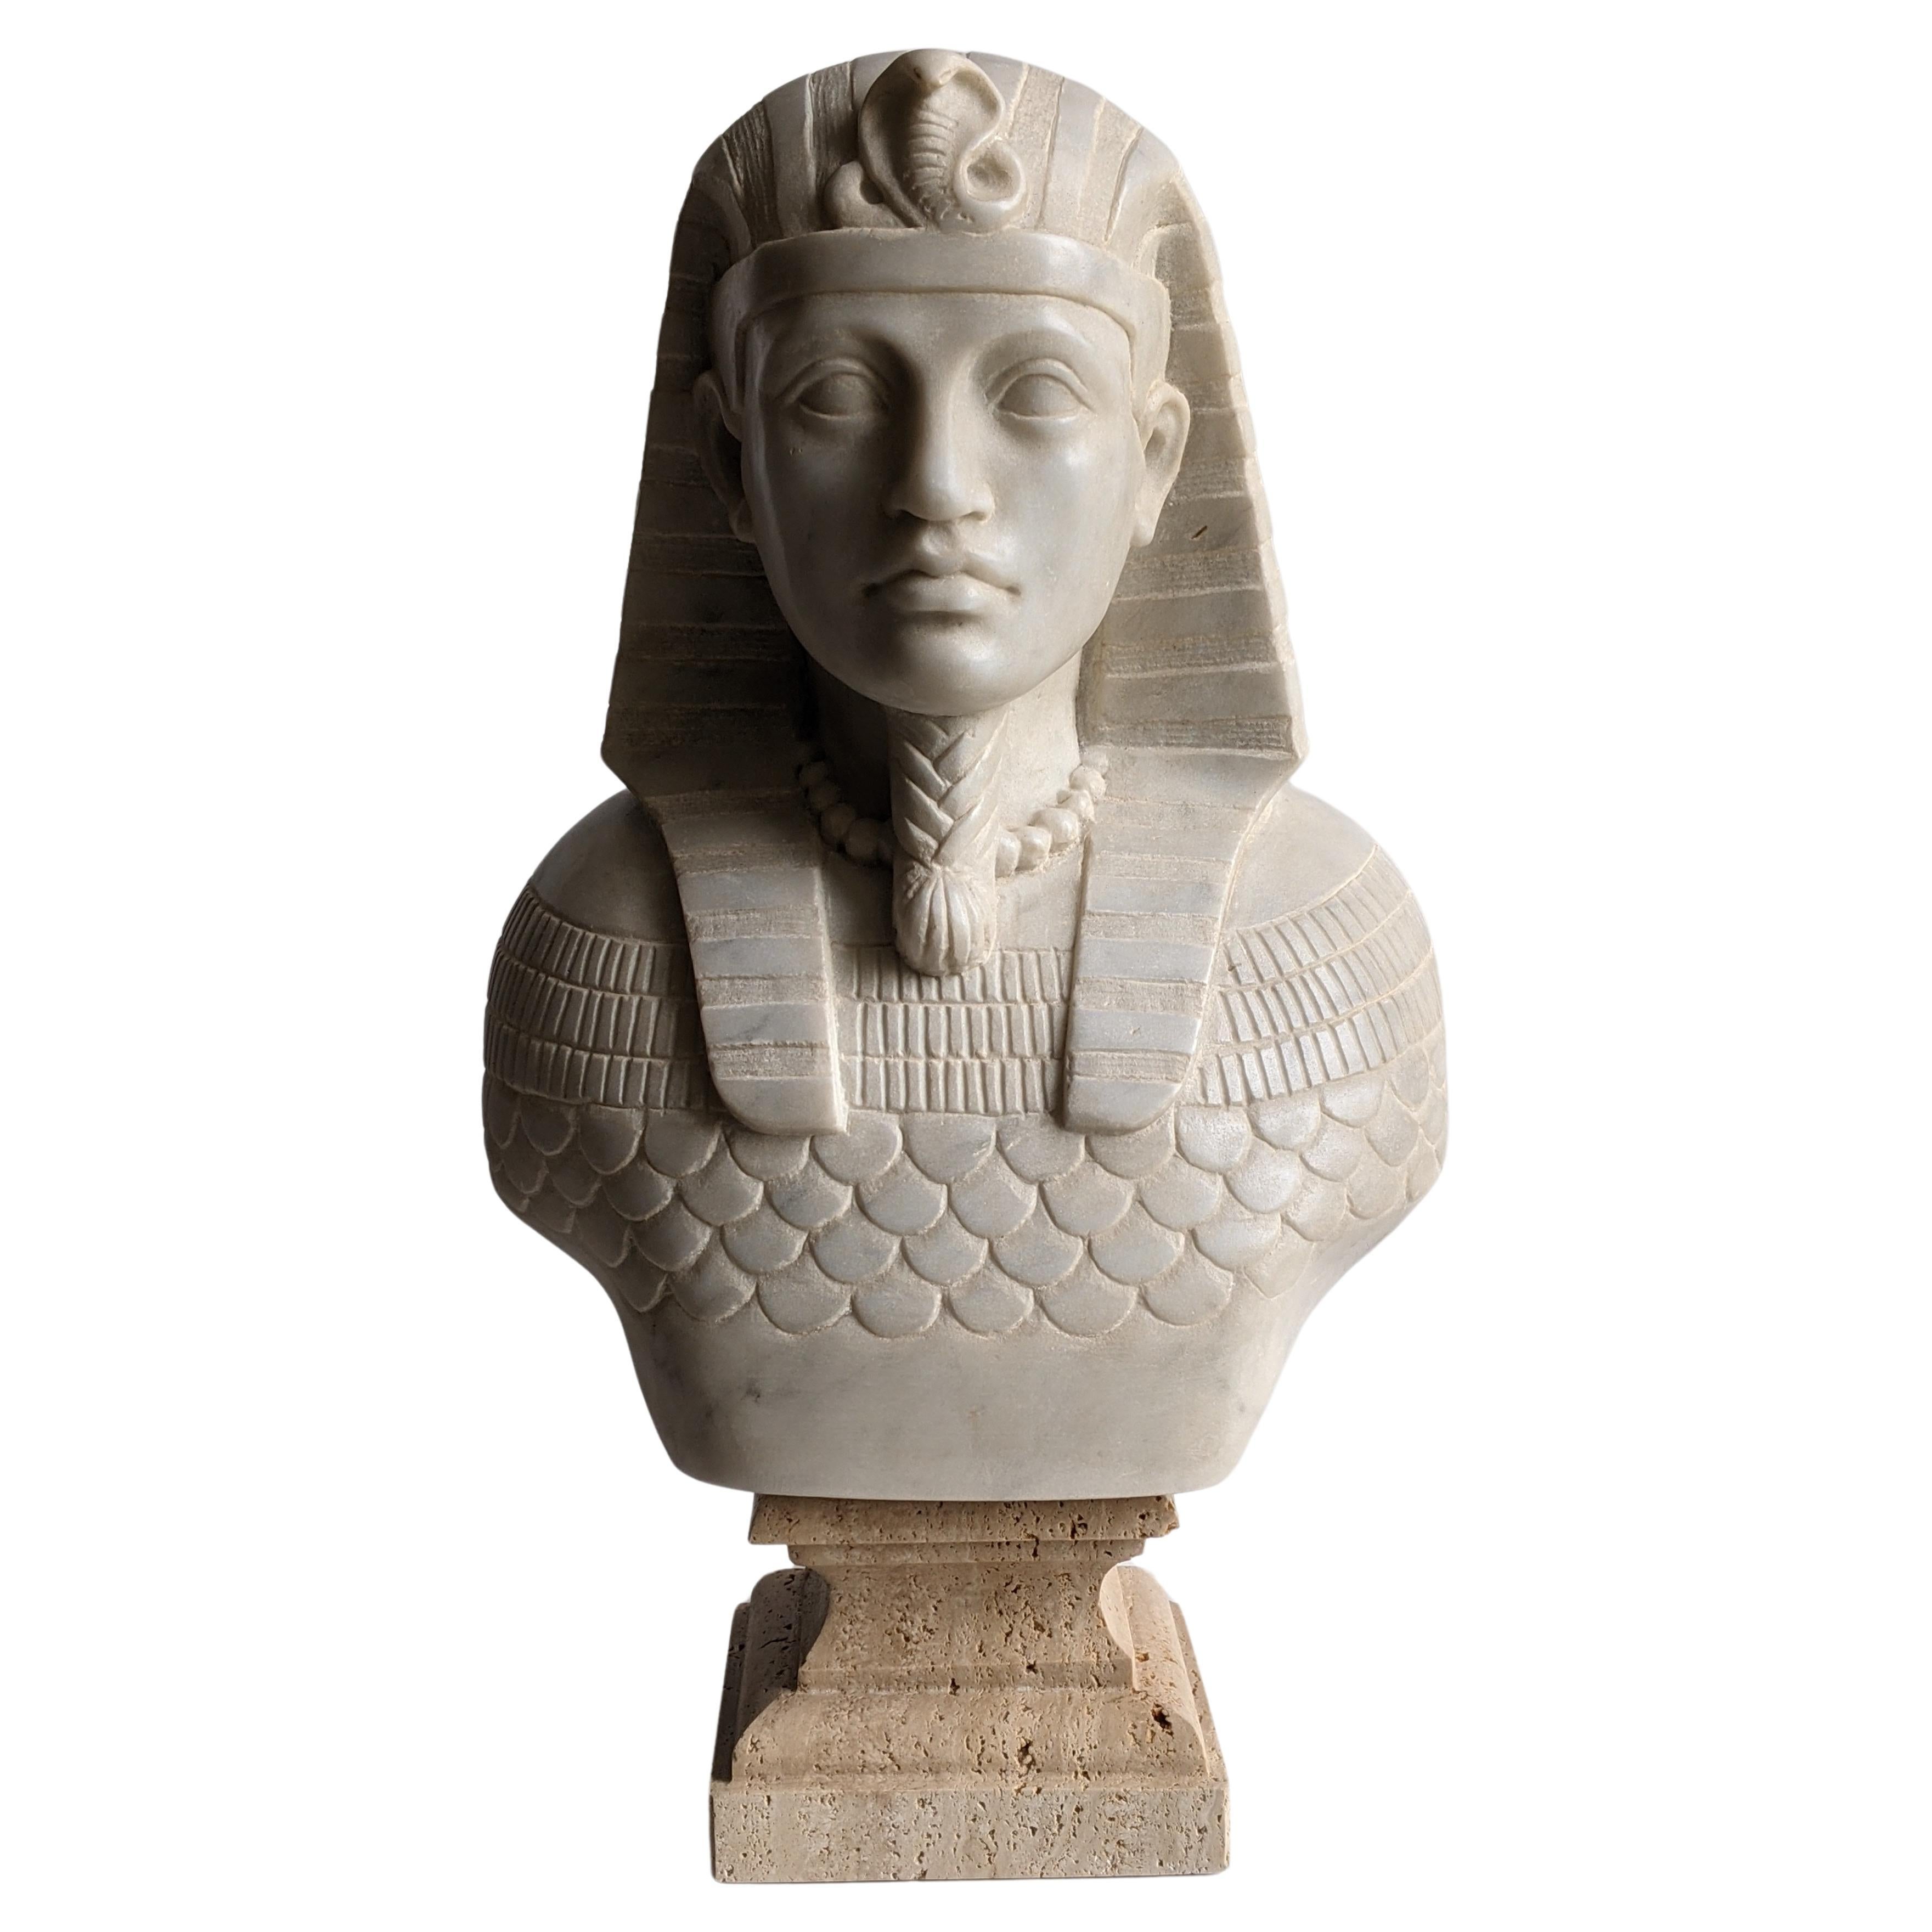 Buste de pharaon égyptien sculpté sur du marbre blanc de Carrare